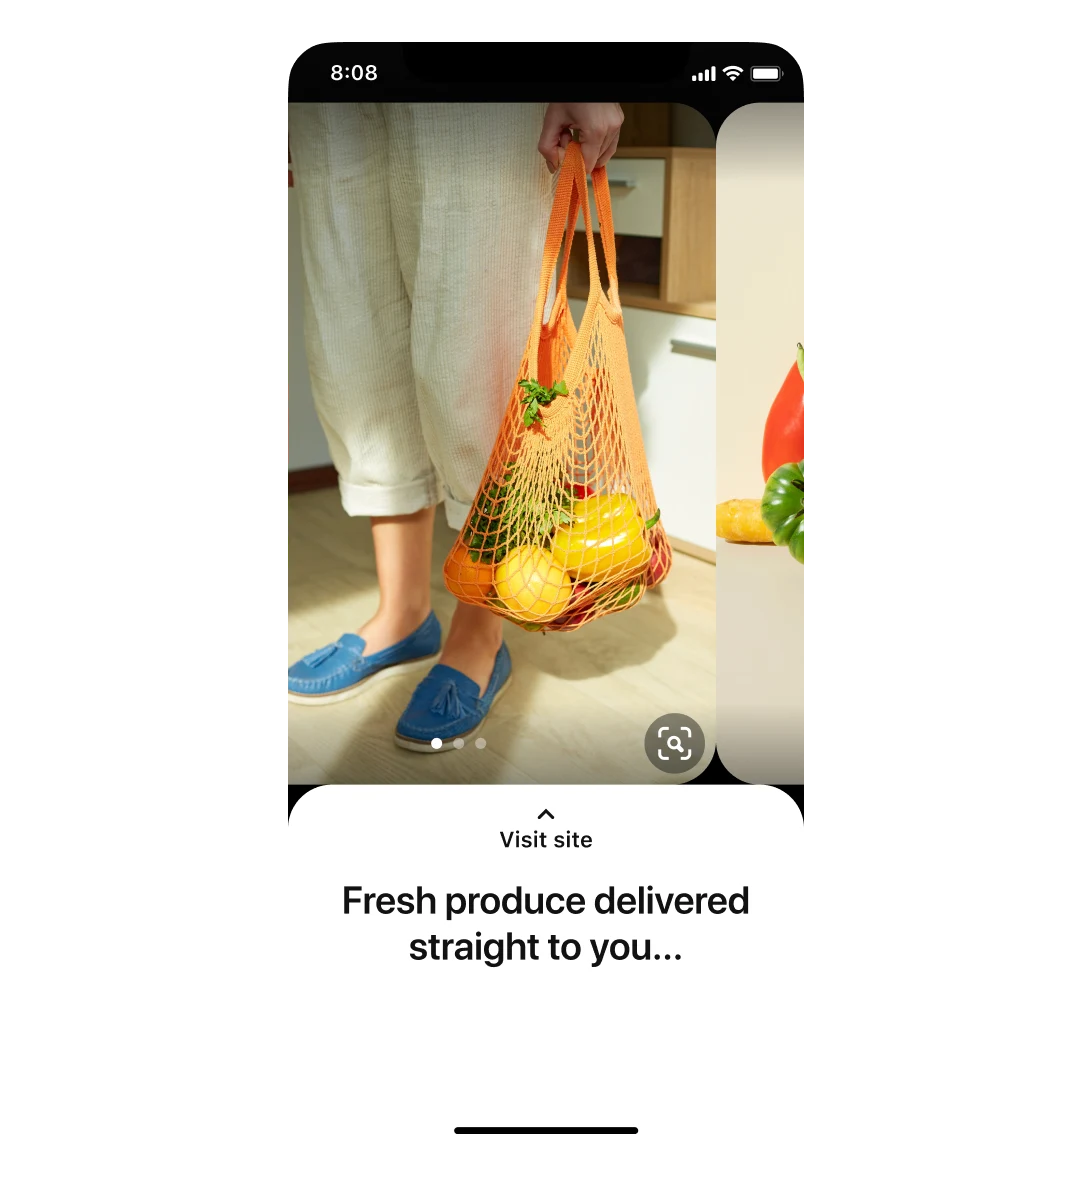 Mobiele weergave van een carrouseladvertentie voor een supermarkt. Op de eerste afbeelding houdt iemand een tas met eten vast. Rechts zie je een deel van de tweede afbeelding, van groente en fruit. De titel is 'fresh produce delivered straight to you...'